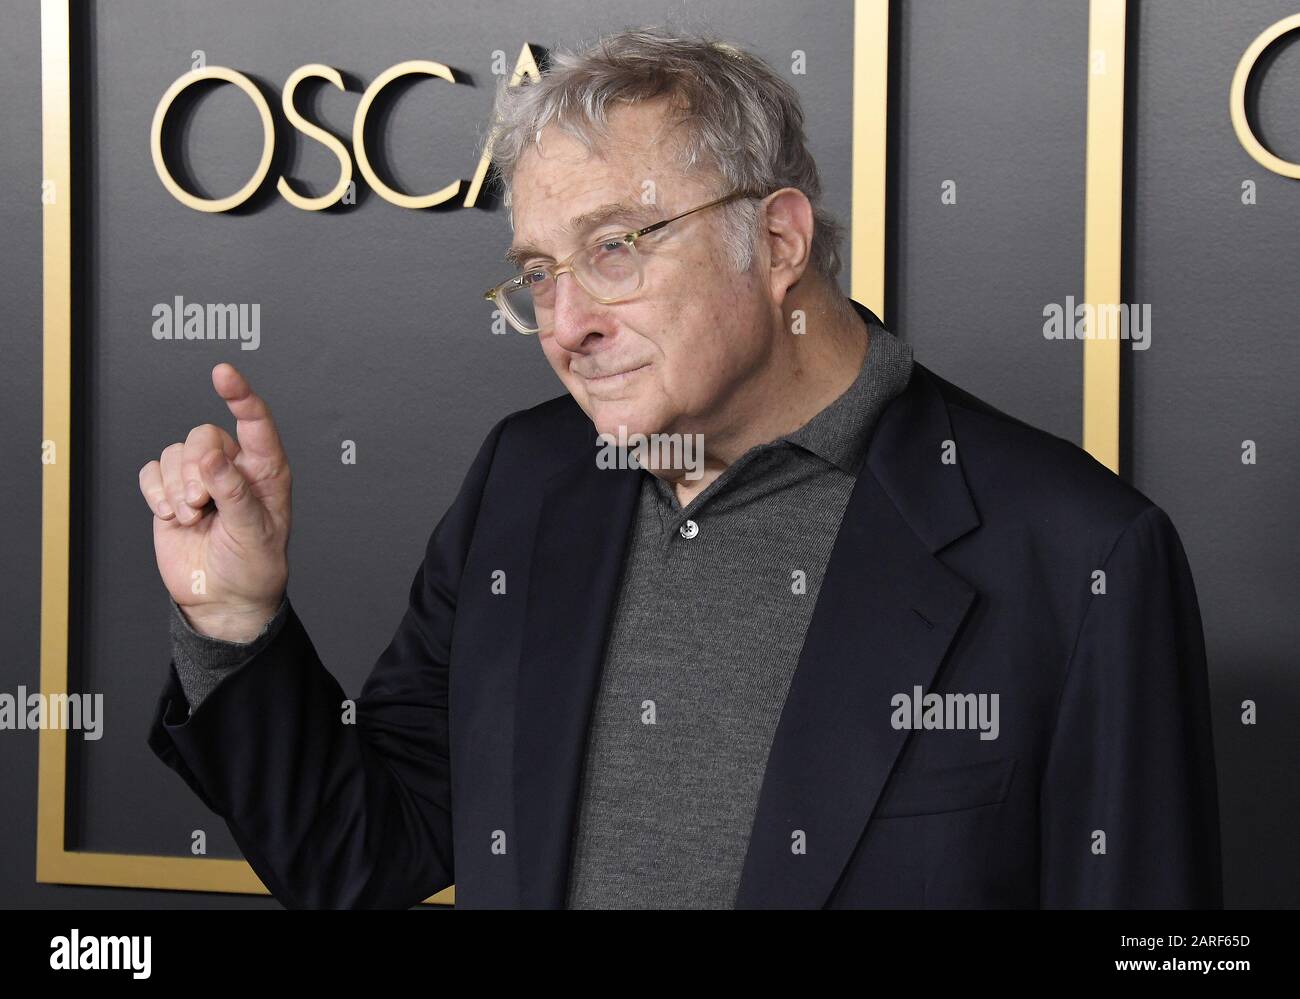 Randy Newman arrive au 92ème déjeuner des Oscars Nominés qui s'est tenu à la salle de bal Ray Dolby à Hollywood & Highland à Hollywood, Californie, le lundi 27 janvier 2020. (Photo De Athanlee B. Mirador/Sipa États-Unis) Banque D'Images